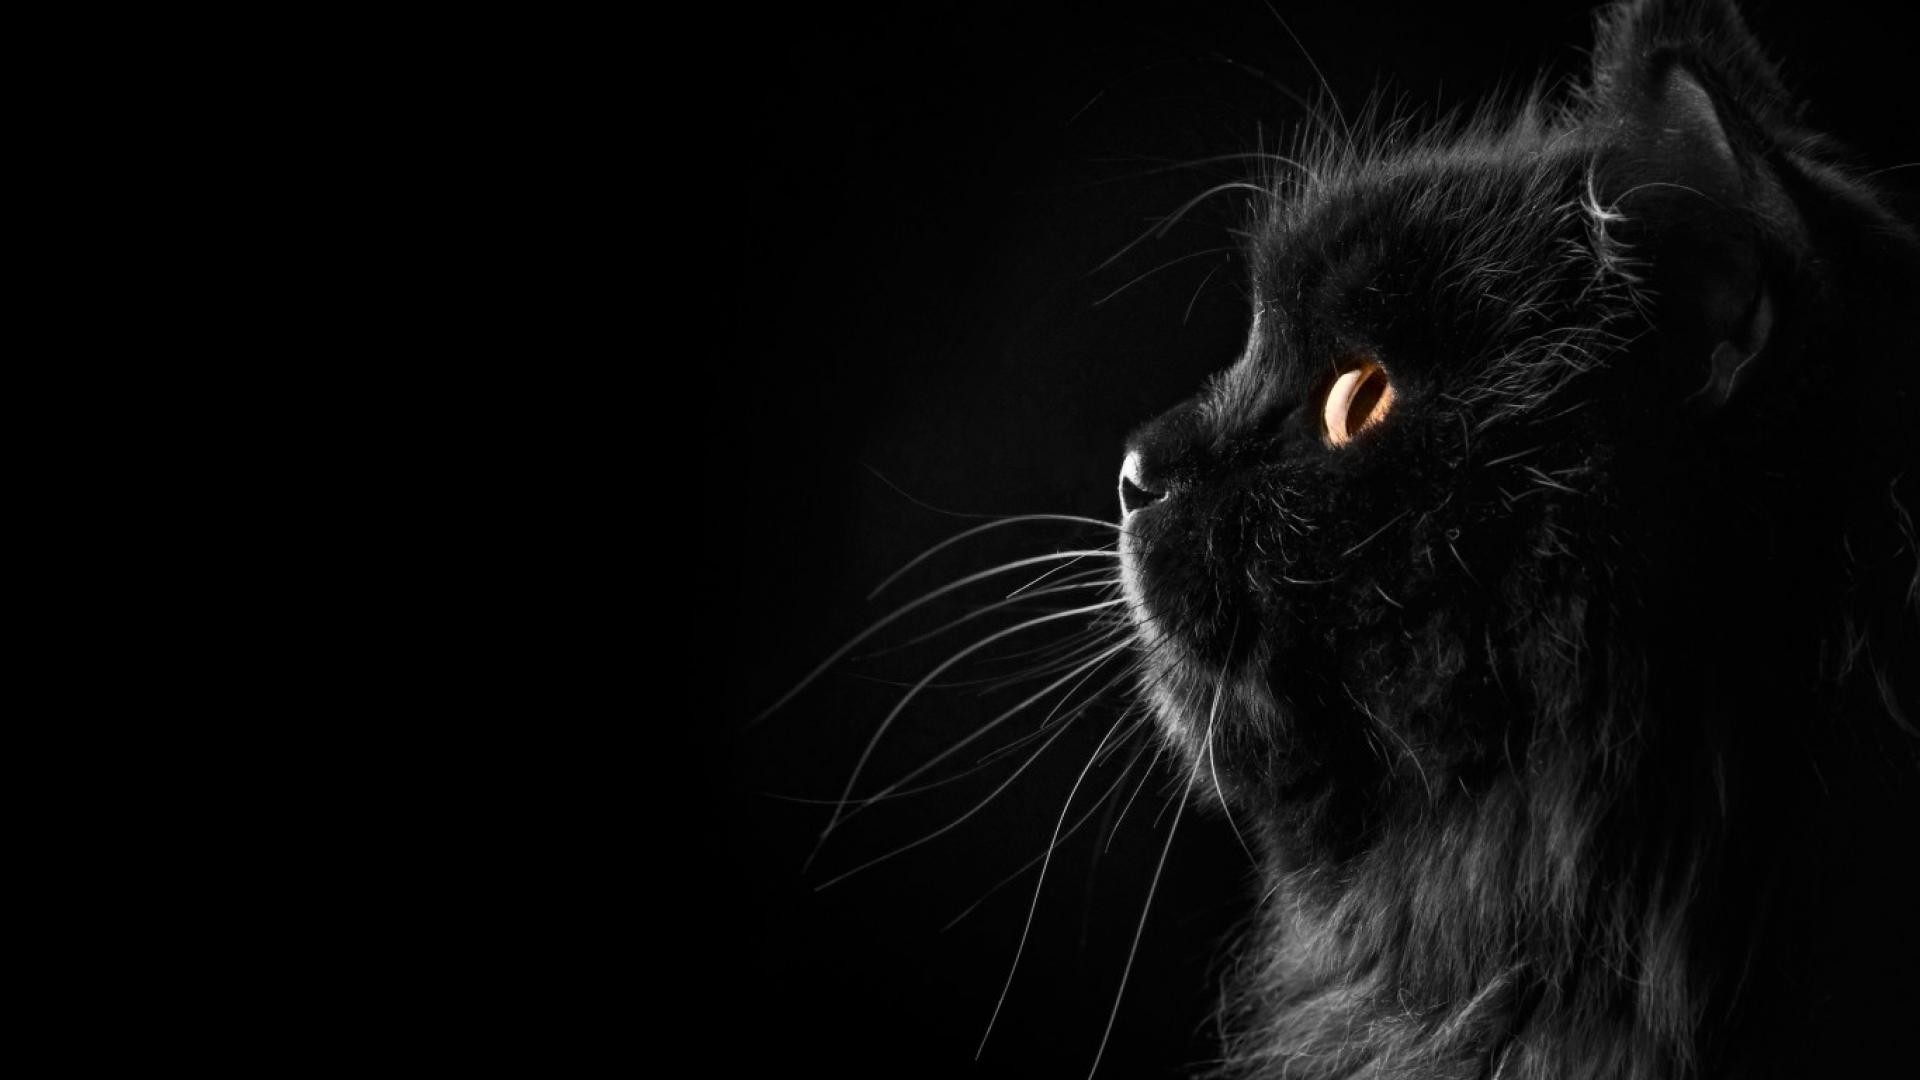 Hình nền Black Cat: Nếu bạn là fan của anime Black Cat, thì đừng bỏ lỡ cơ hội sở hữu hình nền cho máy tính của mình. Với nhiều ảnh chất lượng cao và độ phân giải tuyệt vời, bạn sẽ không chỉ được thưởng thức màn hình nền đẹp mắt mà còn có thể truyền tải đam mê của mình với bộ phim này.